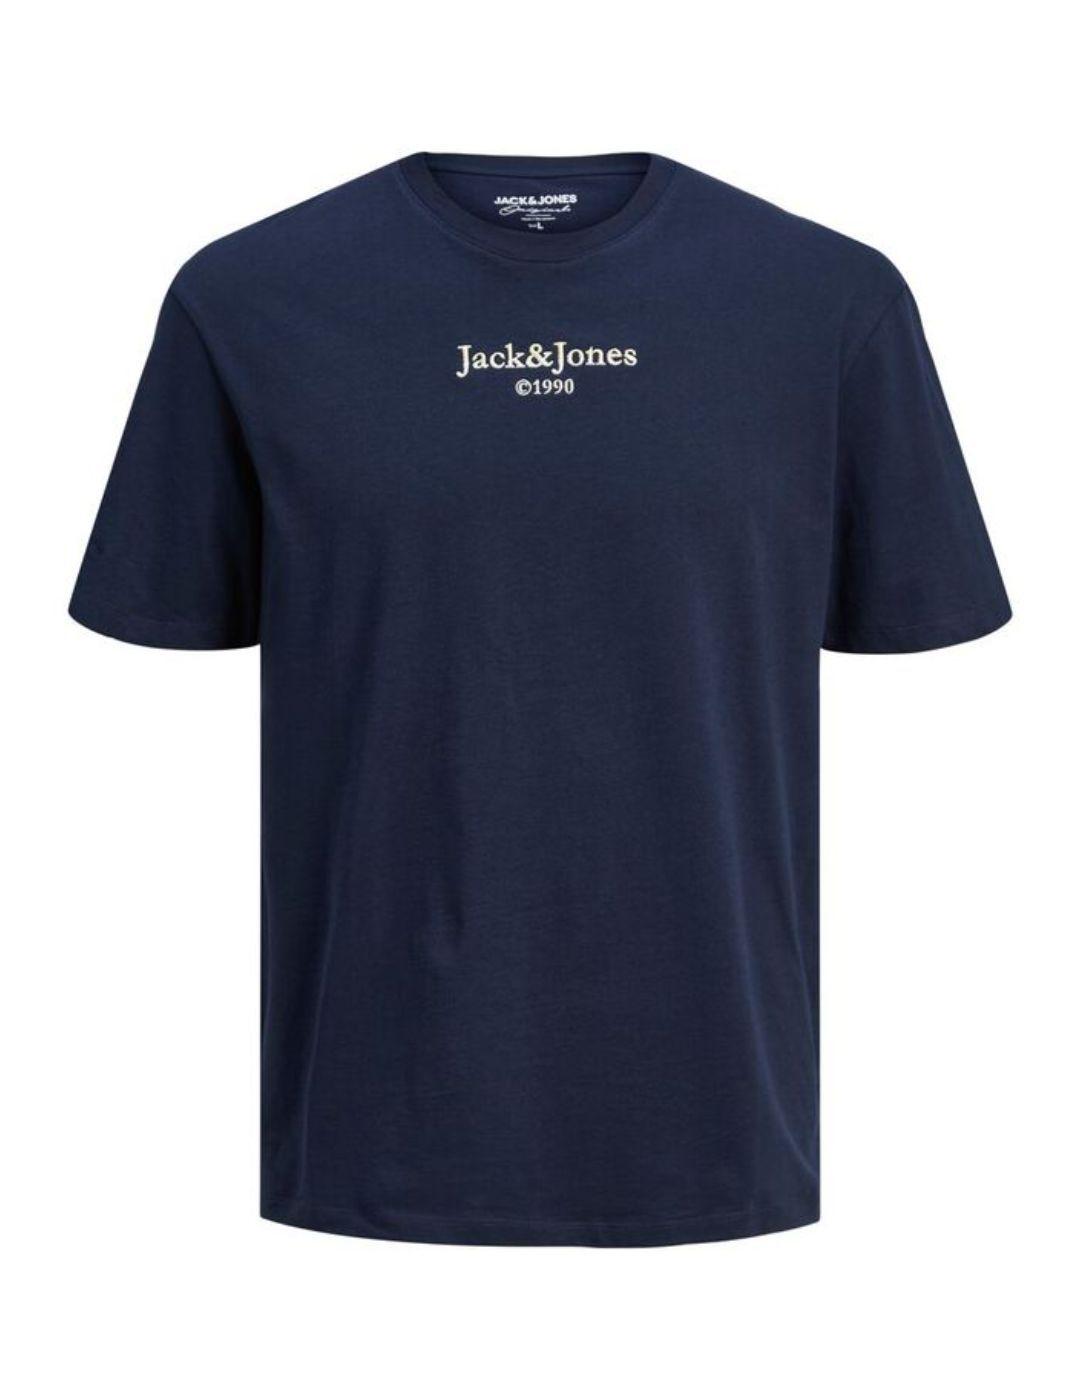 Camiseta Jack&Jones Firefly marino para hombre -b